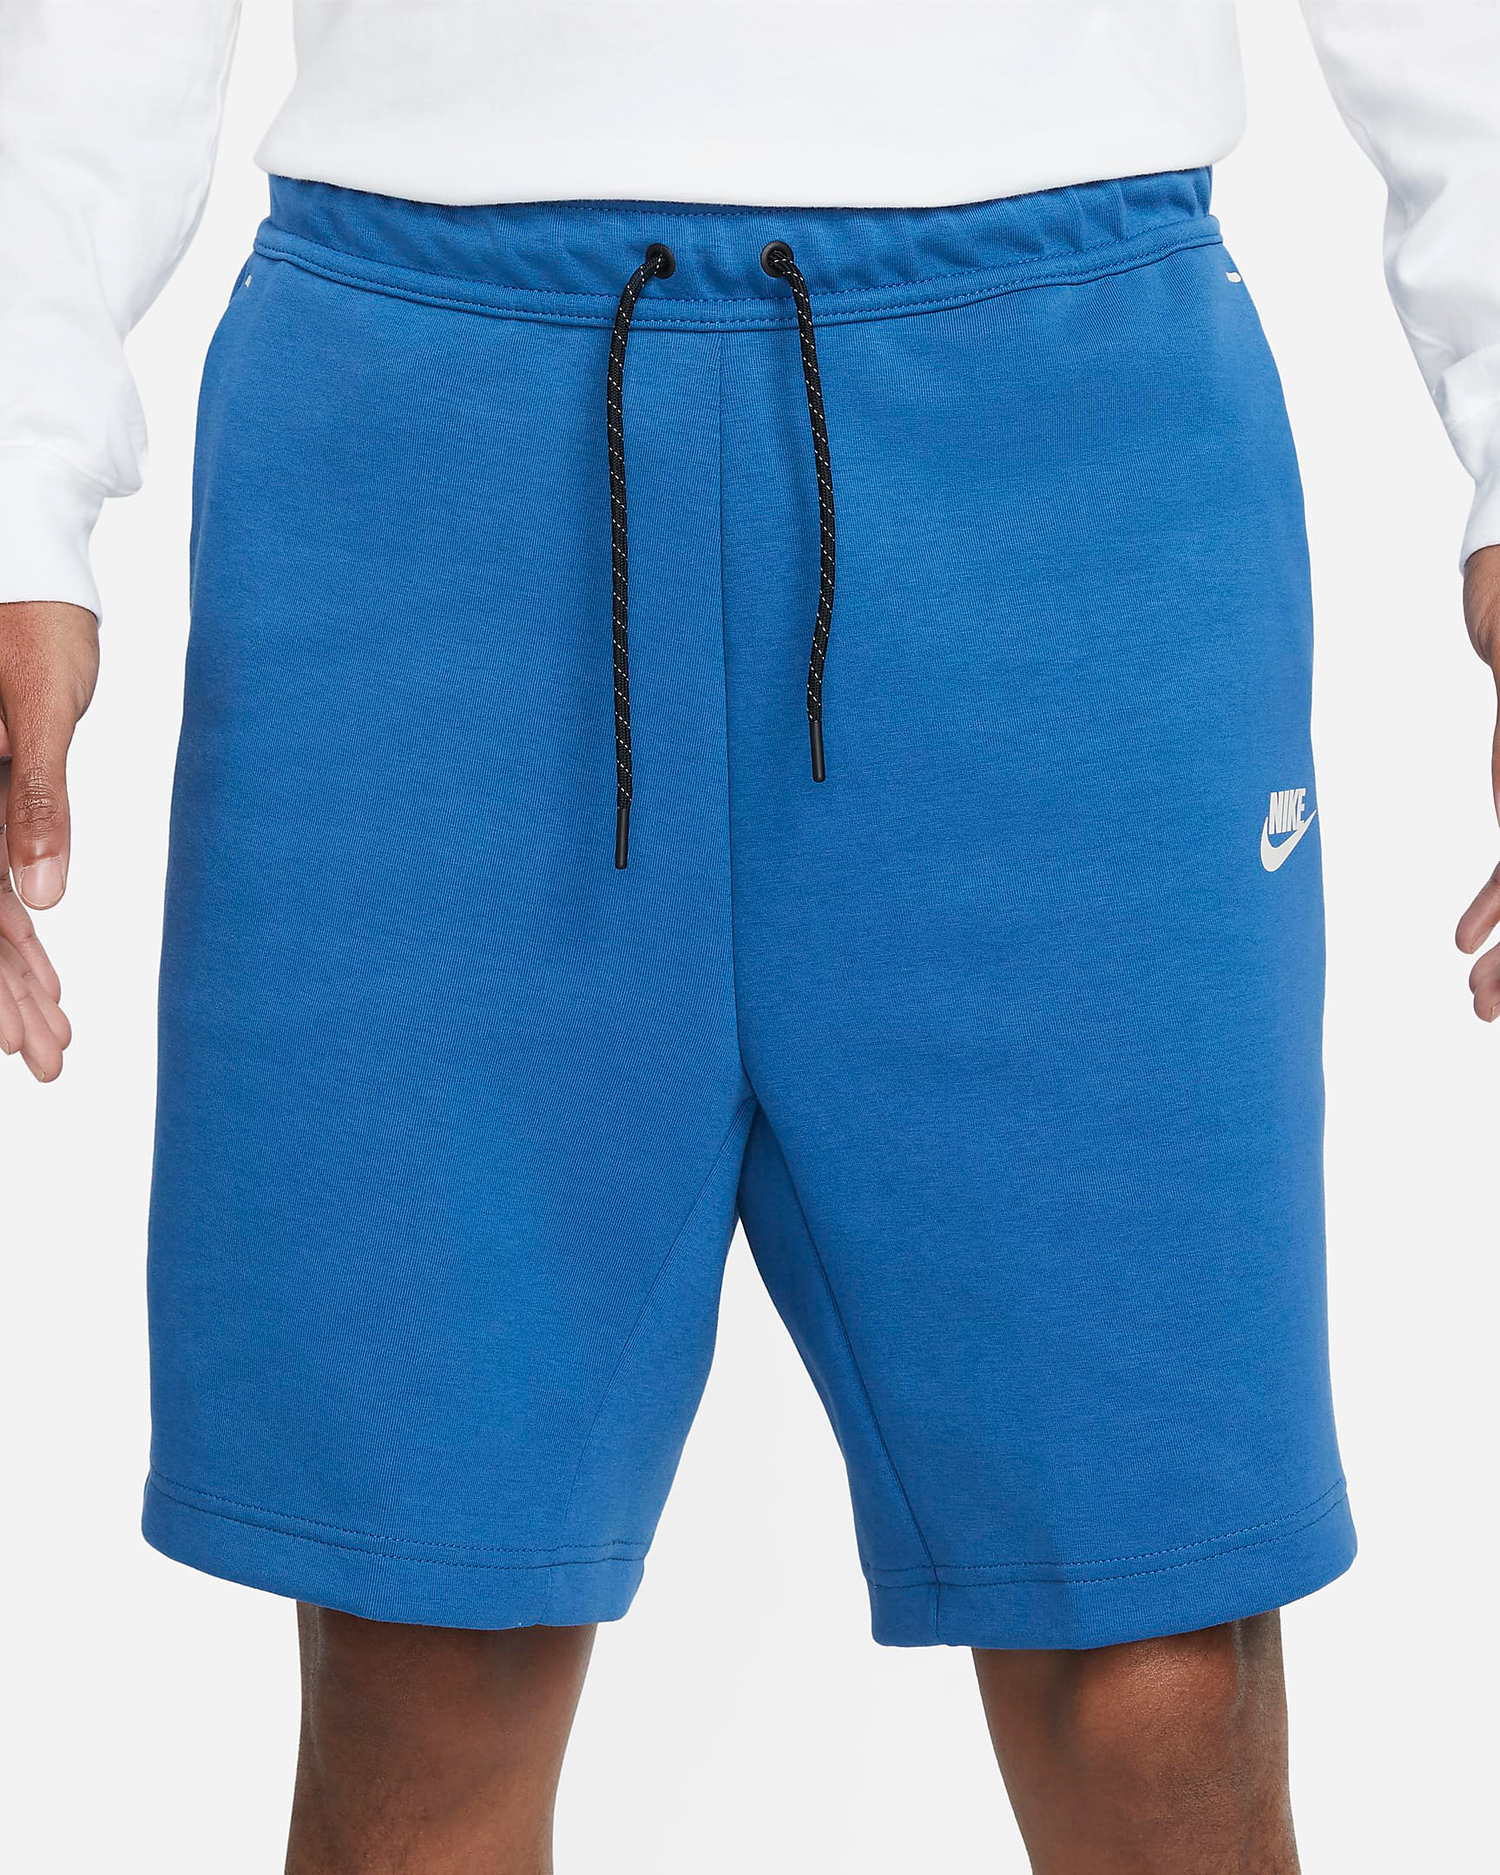 nike-tech-fleece-shorts-dark-marina-blue-1